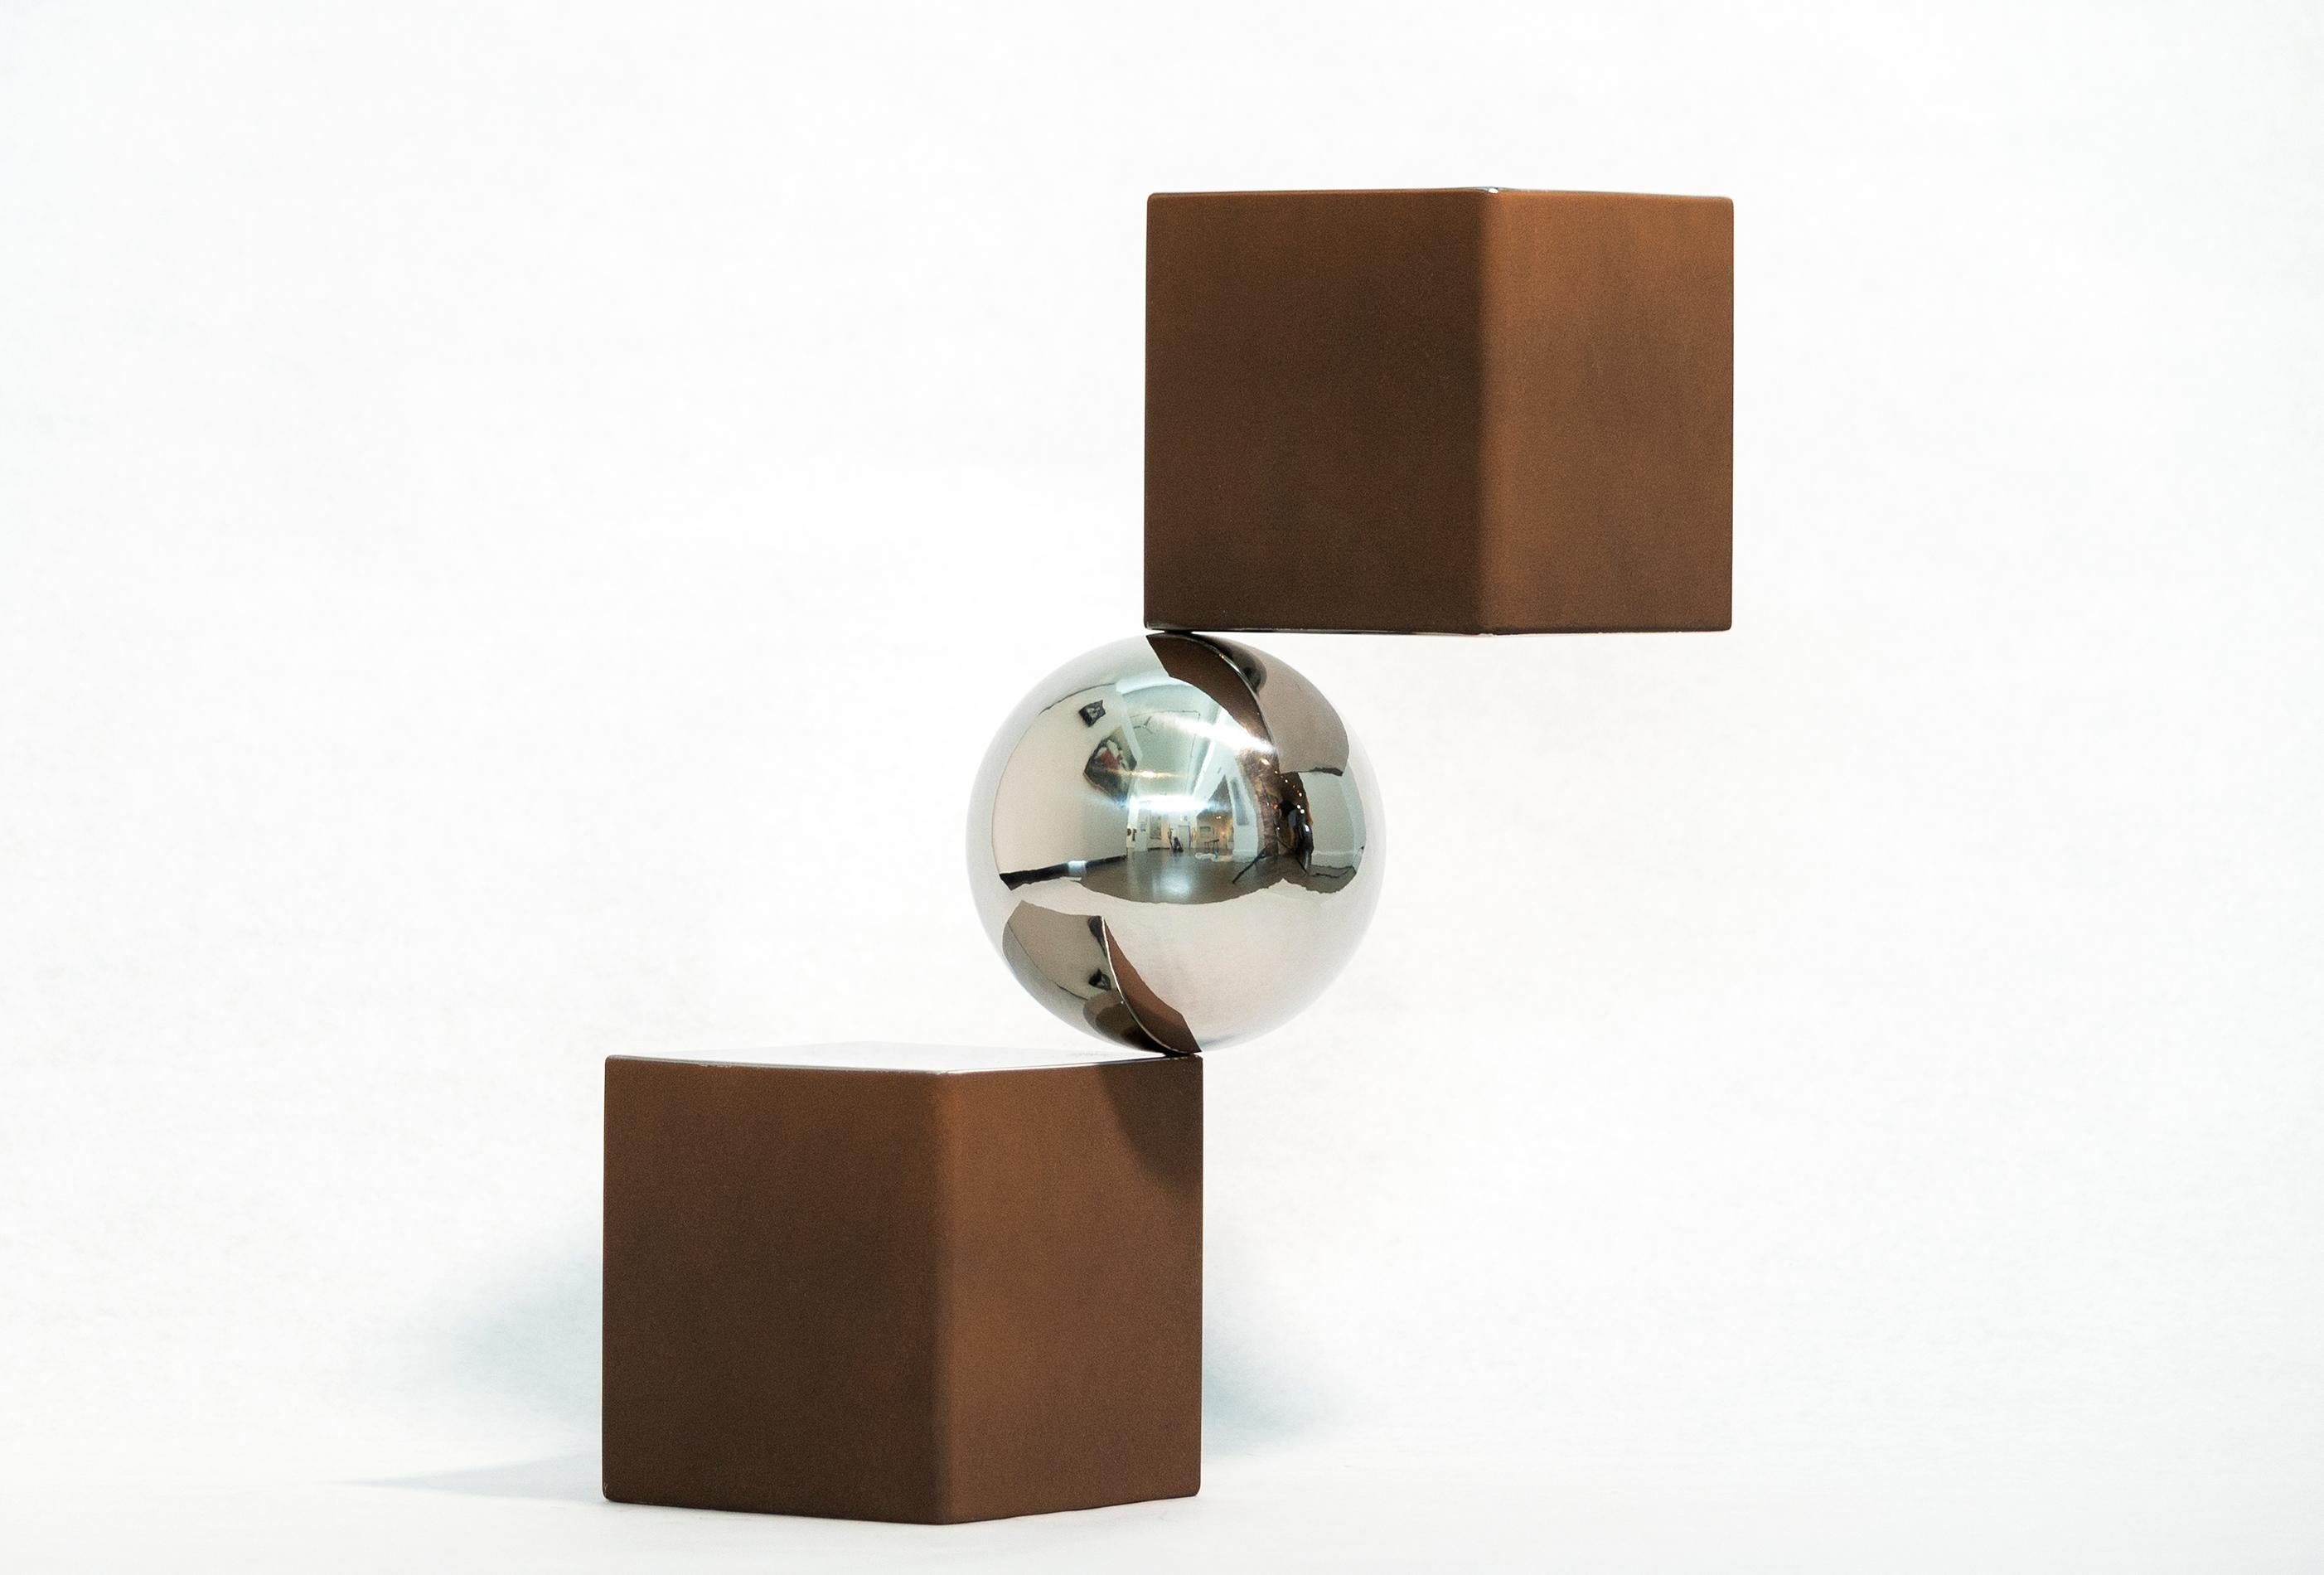 Equilibre 2 tons 1/10 - sculpture géométrique abstraite, moderne, en aluminium poli - Contemporain Sculpture par Philippe Pallafray